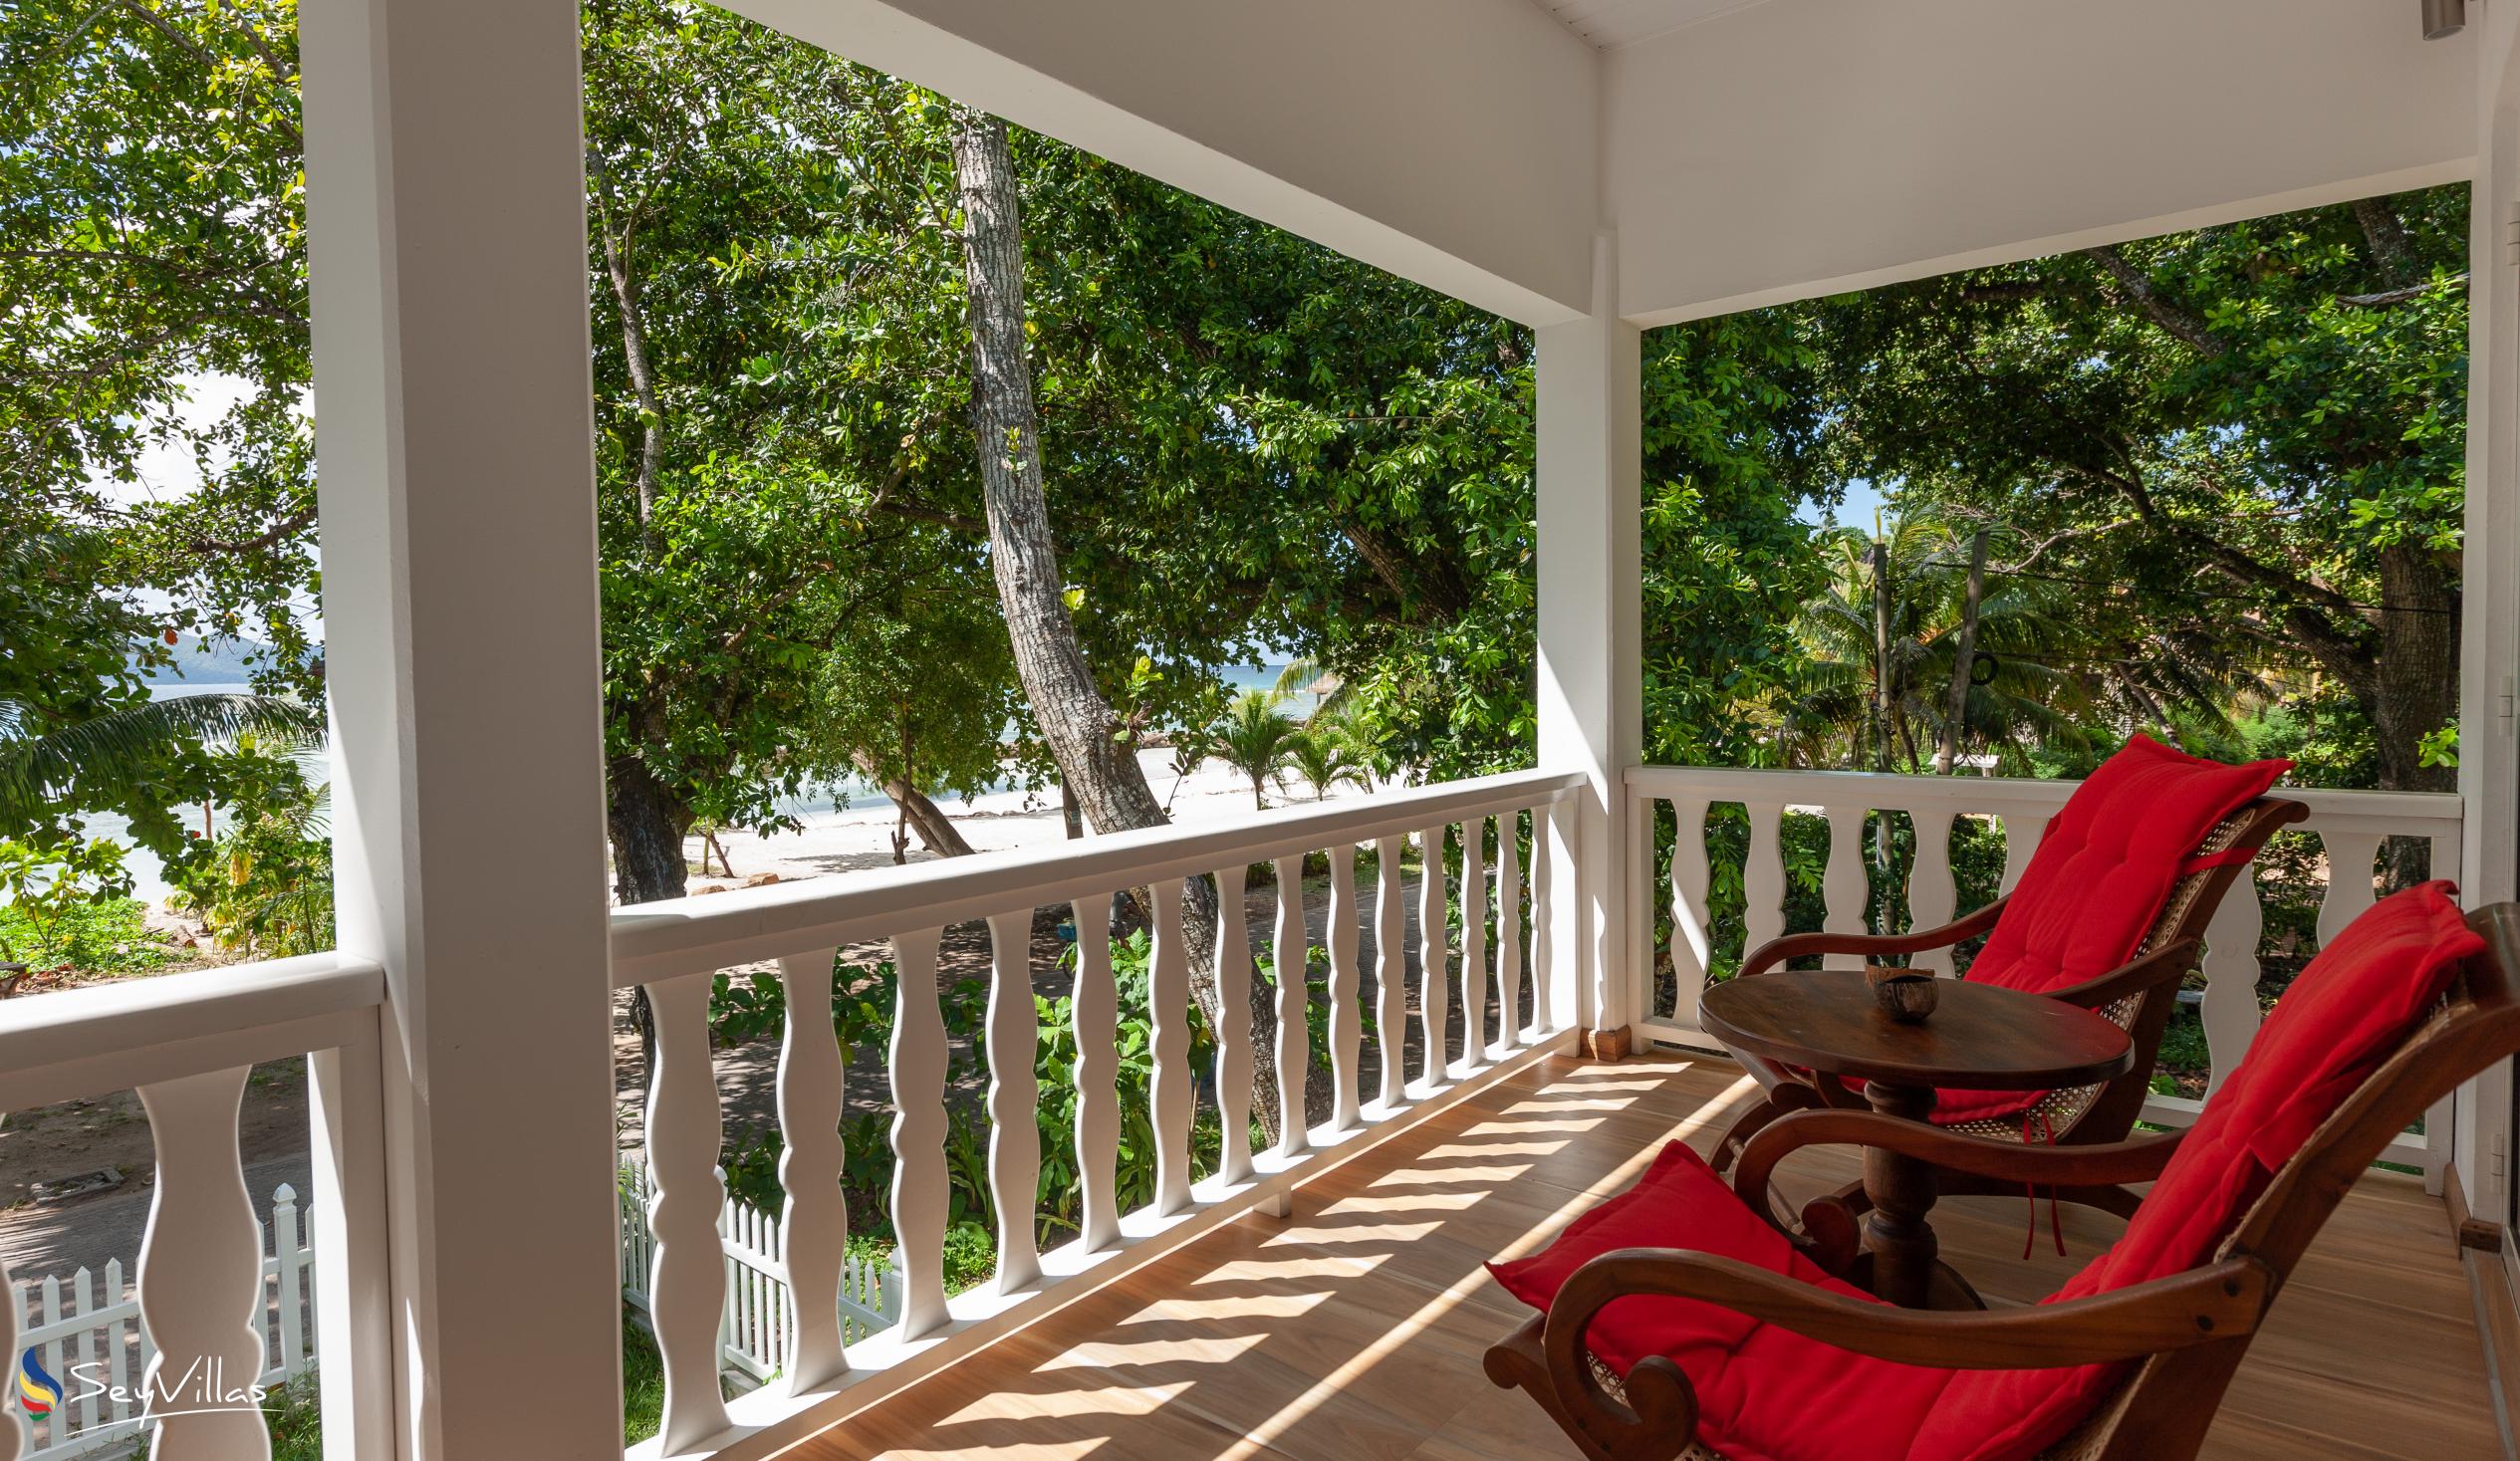 Foto 43: Villa Charette - Deluxe Appartement mit Meerblick - La Digue (Seychellen)